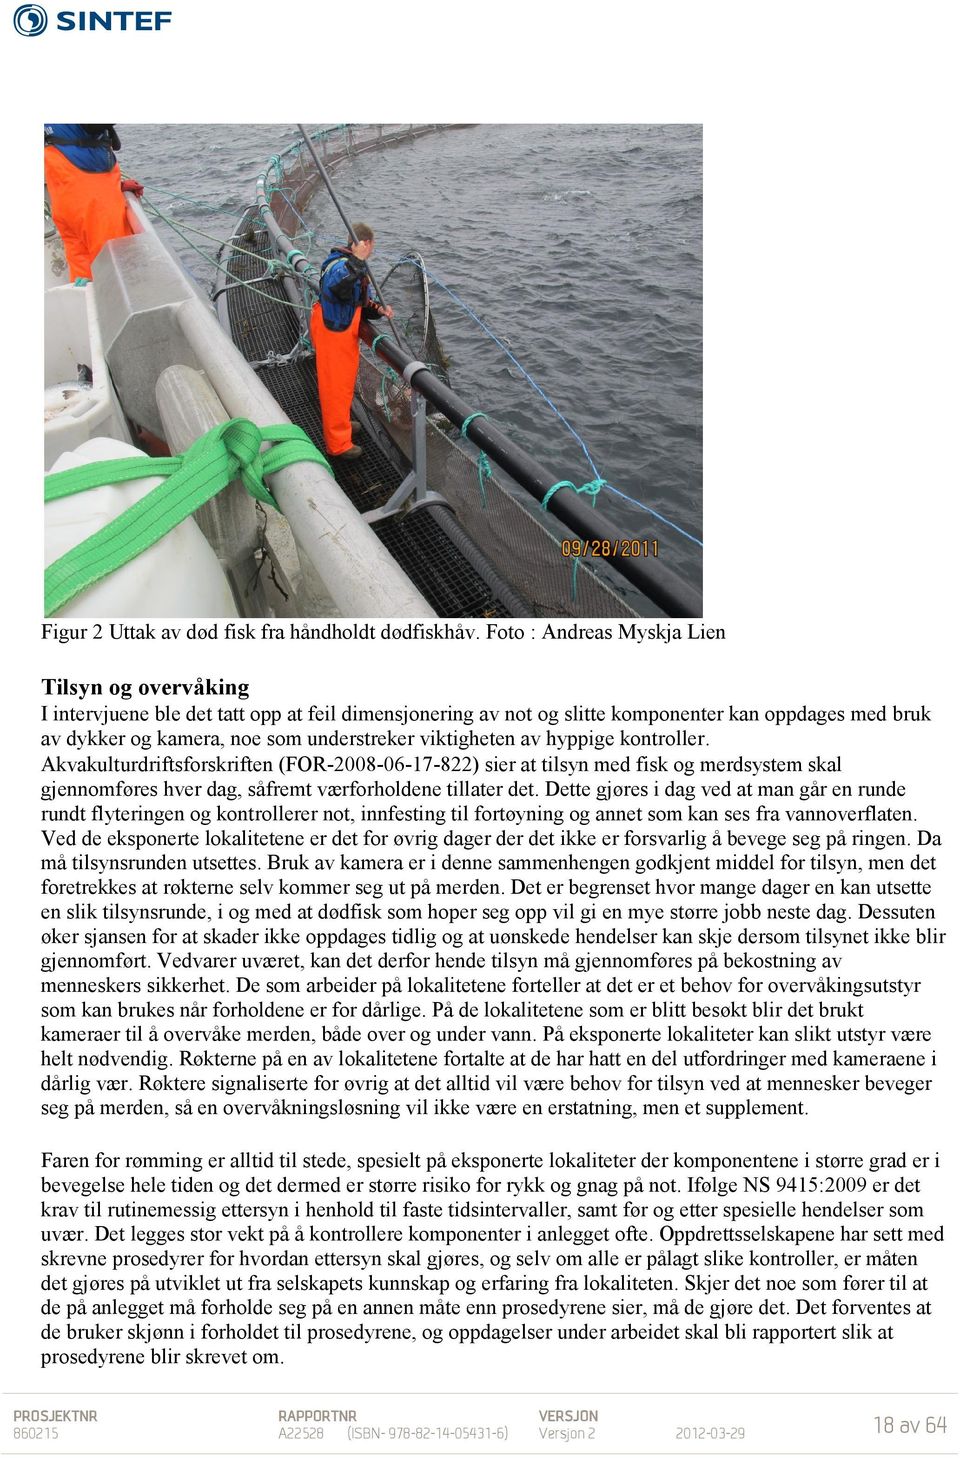 viktigheten av hyppige kontroller. Akvakulturdriftsforskriften (FOR-2008-06-17-822) sier at tilsyn med fisk og merdsystem skal gjennomføres hver dag, såfremt værforholdene tillater det.